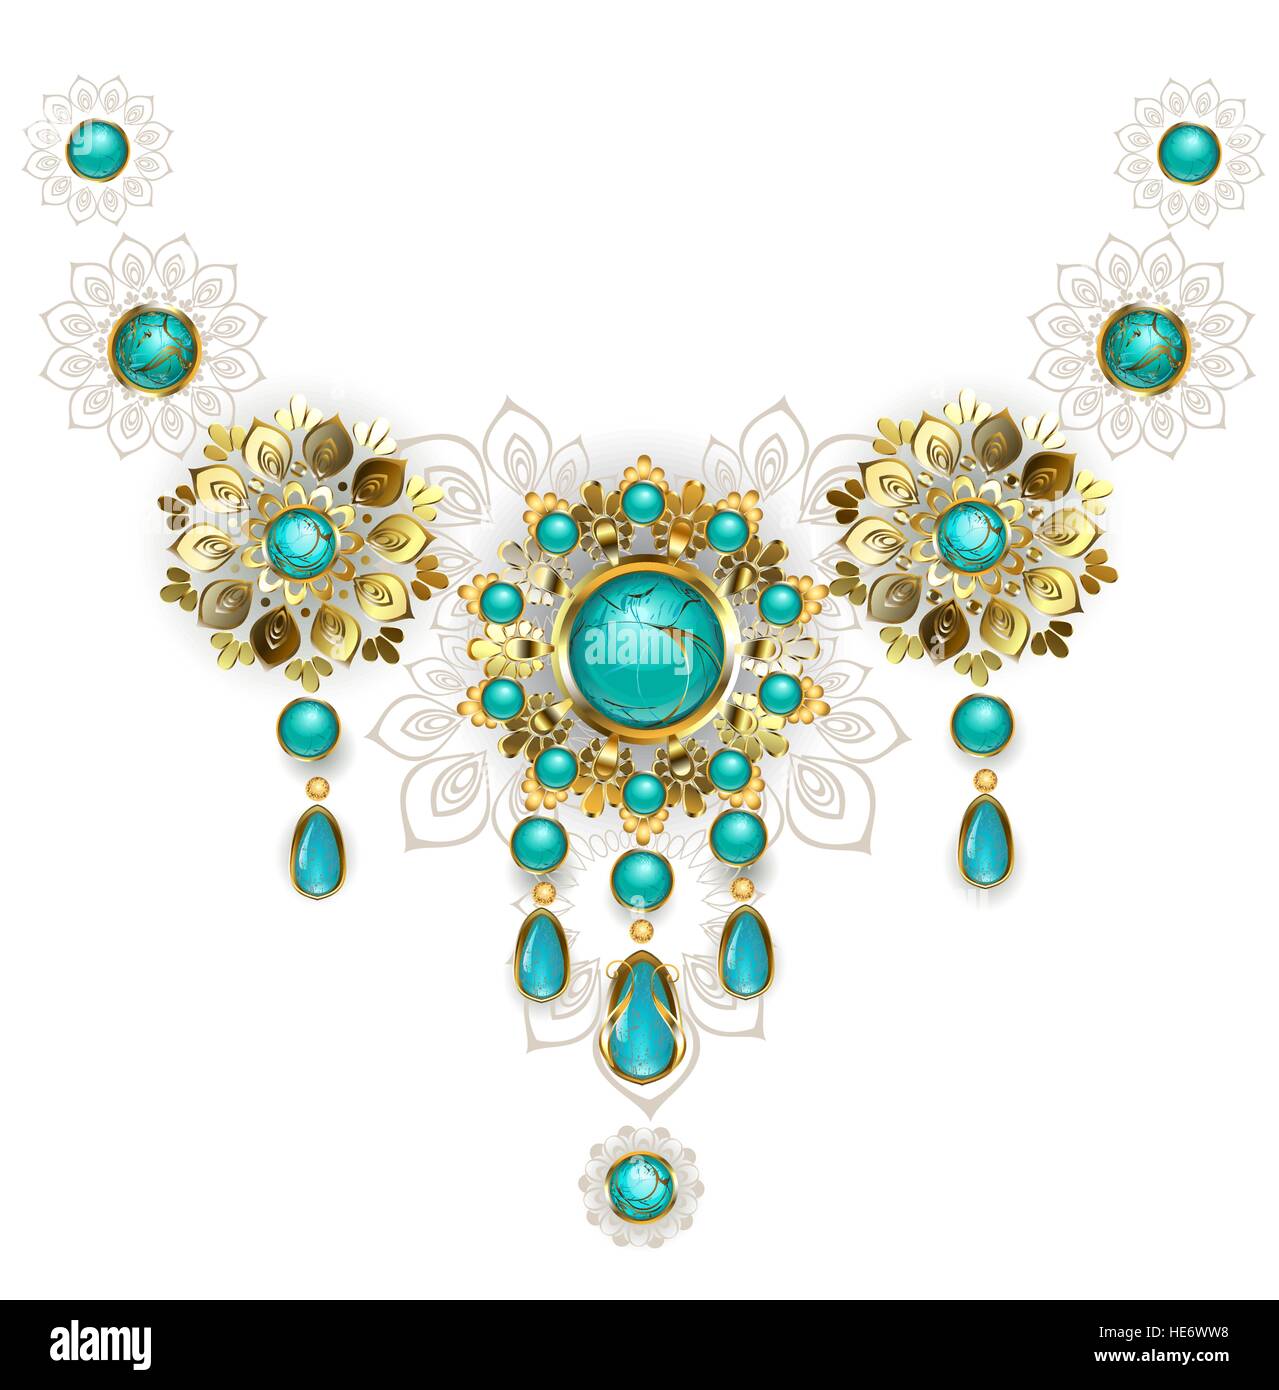 Bijoux en or des bijoux dans un style oriental, décorées avec turquoise sur fond blanc. La conception de bijoux. Bijoux en or. Illustration de Vecteur